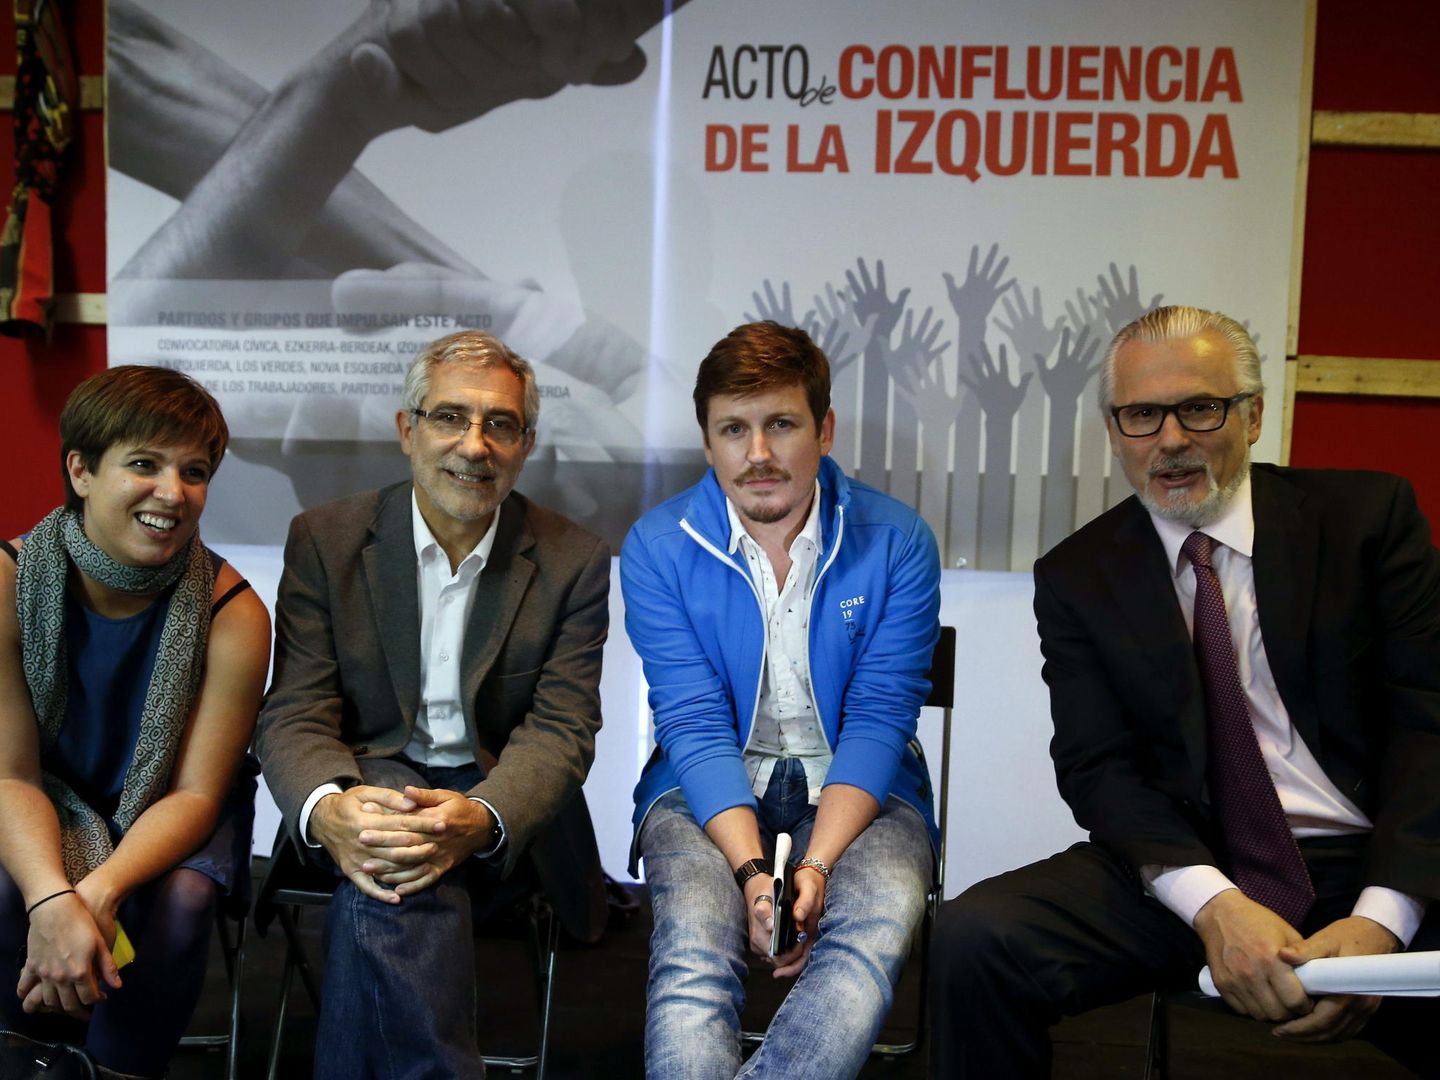 Beatriz Talegón, el juez Baltasar Garzón y los dirigentes de Izquierda Abierta Gaspar Llamazares y Tasio Oliver, el 30 de septiembre de 2015 en Madrid, en un acto en defensa de la unidad de la izquierda. (EFE)